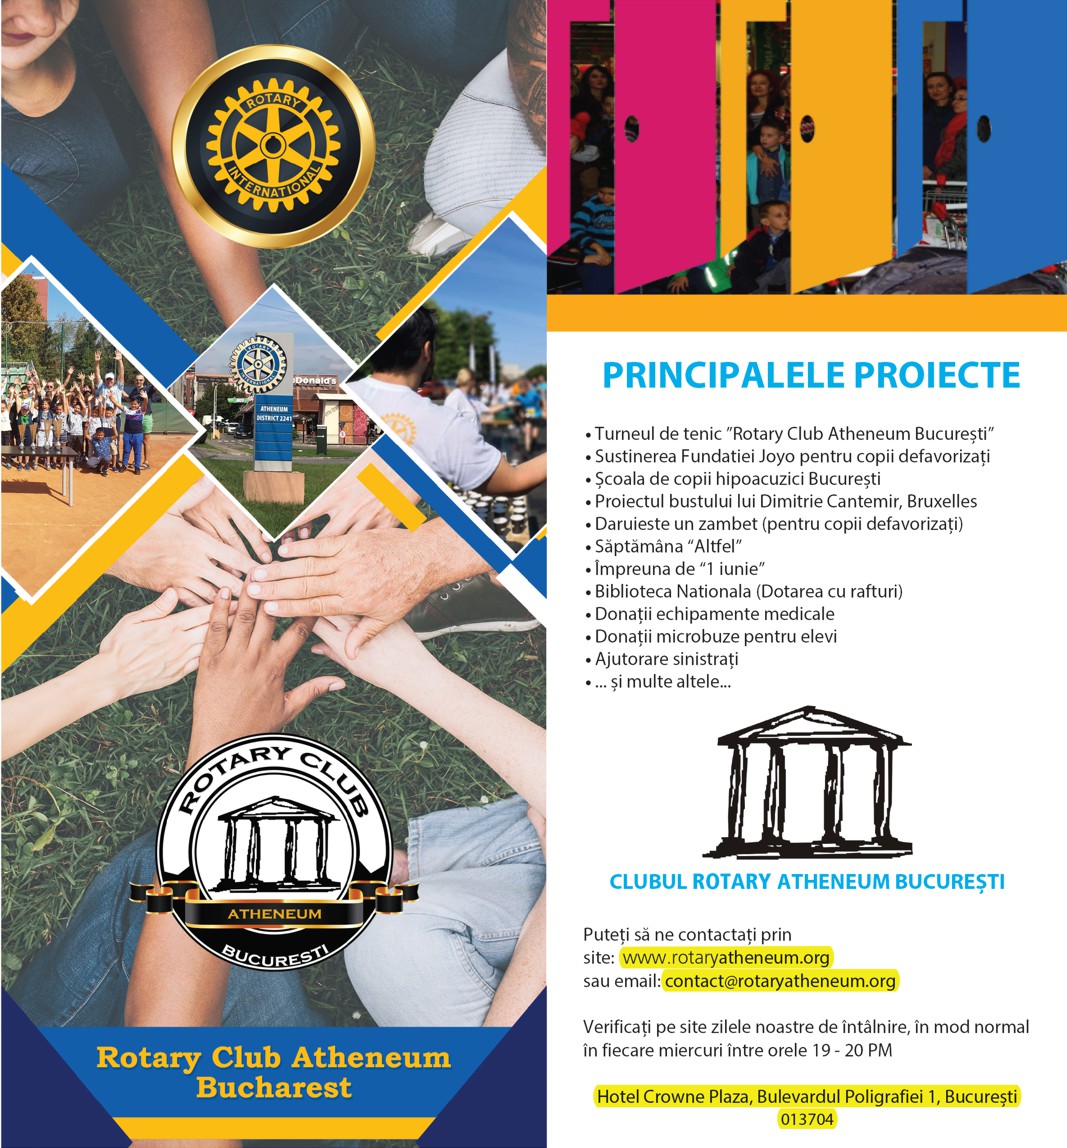 Rotary Club Atheneum Bucuresti